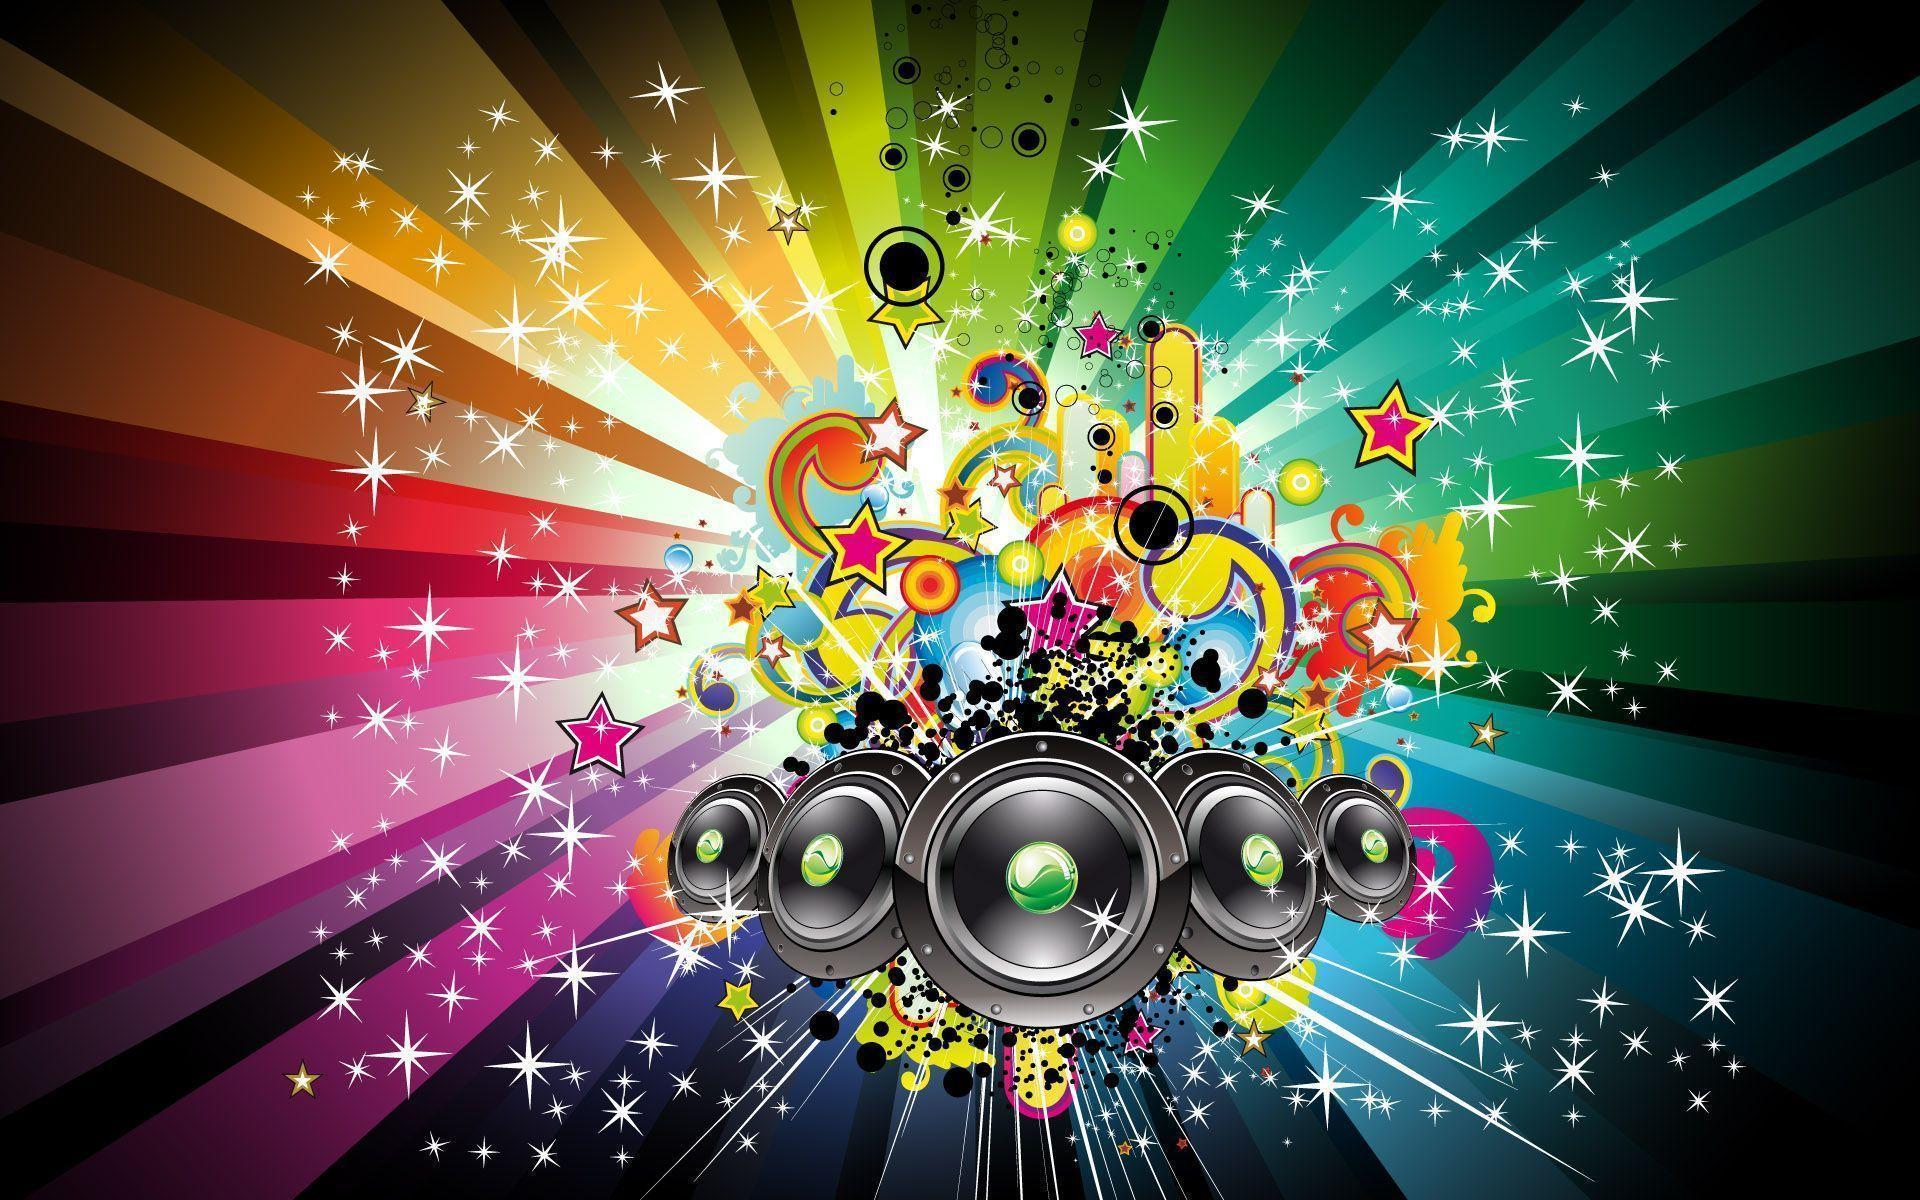 Rainbow speaker digital art for music desktop wallpaper. Finest